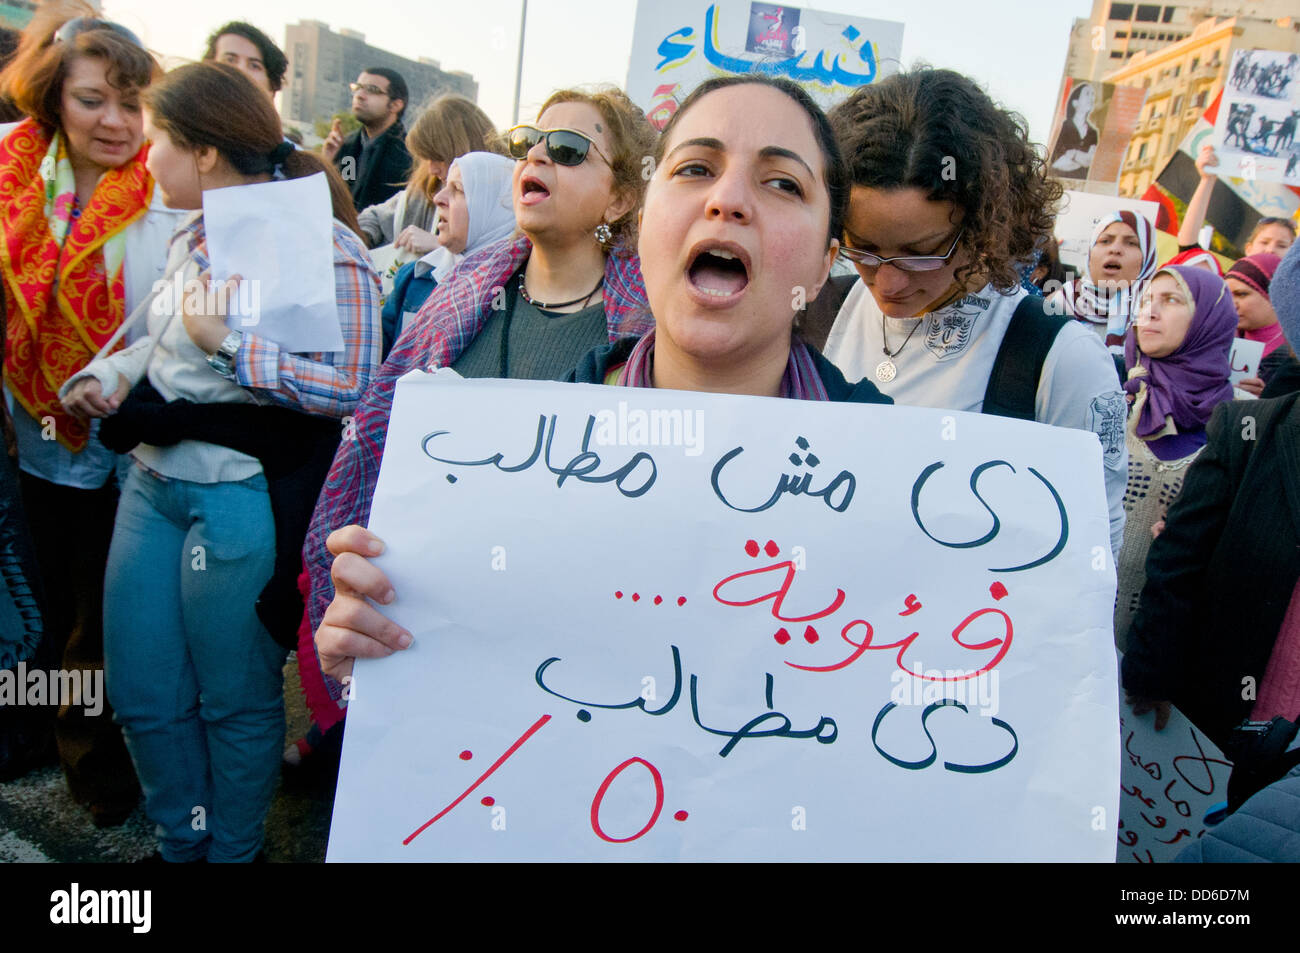 Noi non rivendicazione perché siamo donne abbiamo rivendicazione perché ci sono 50% della popolazione)' afferma questa targhetta - Il Cairo Egitto Foto Stock